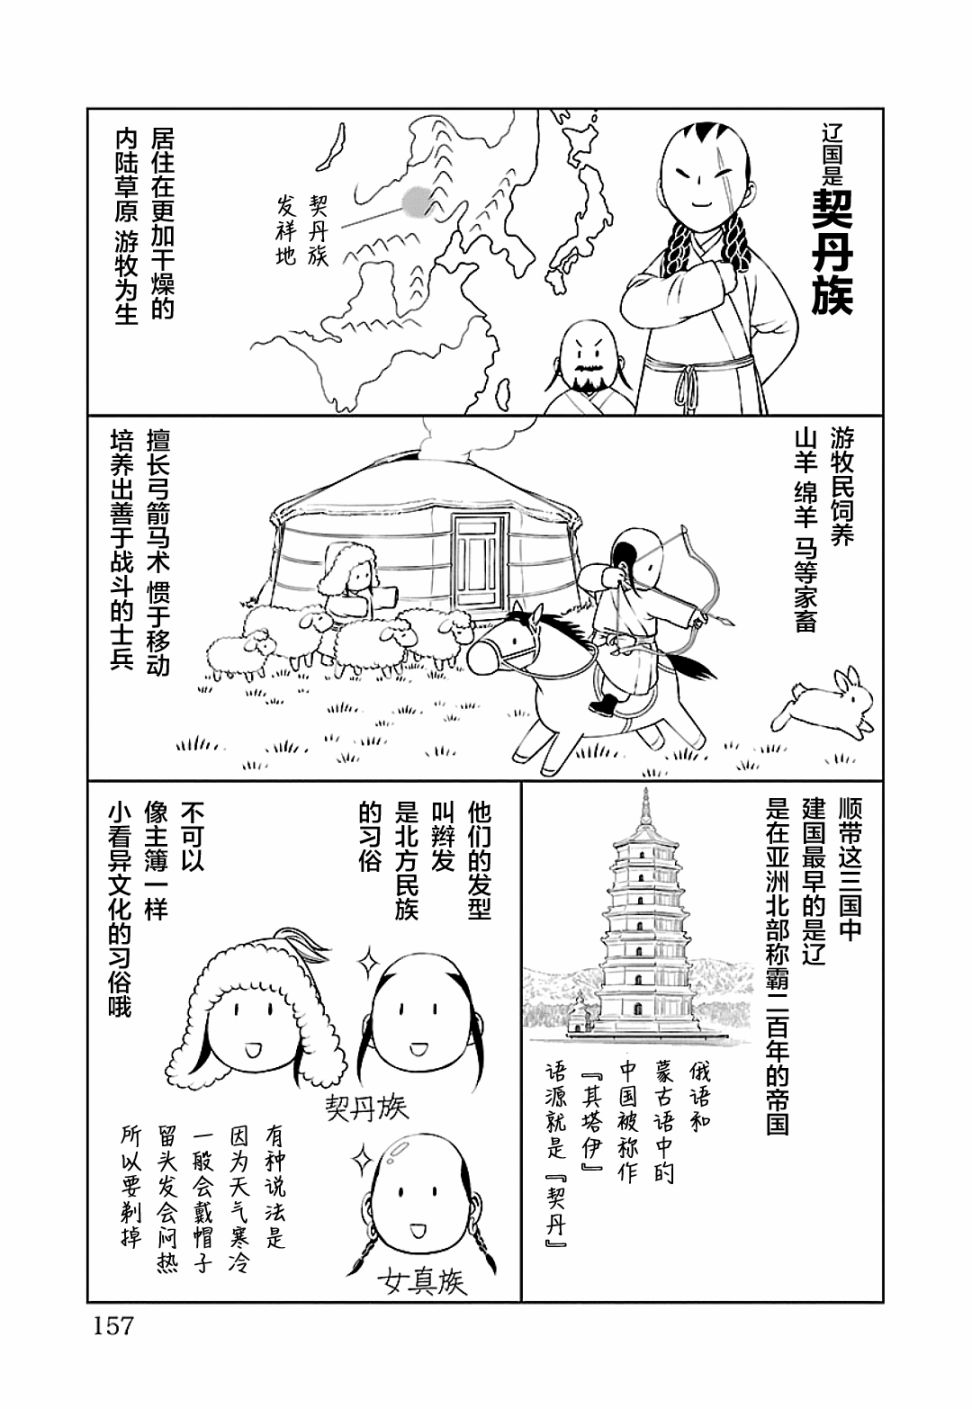 天上恋歌~金之公主与火之药师~漫画,第二卷后记2图